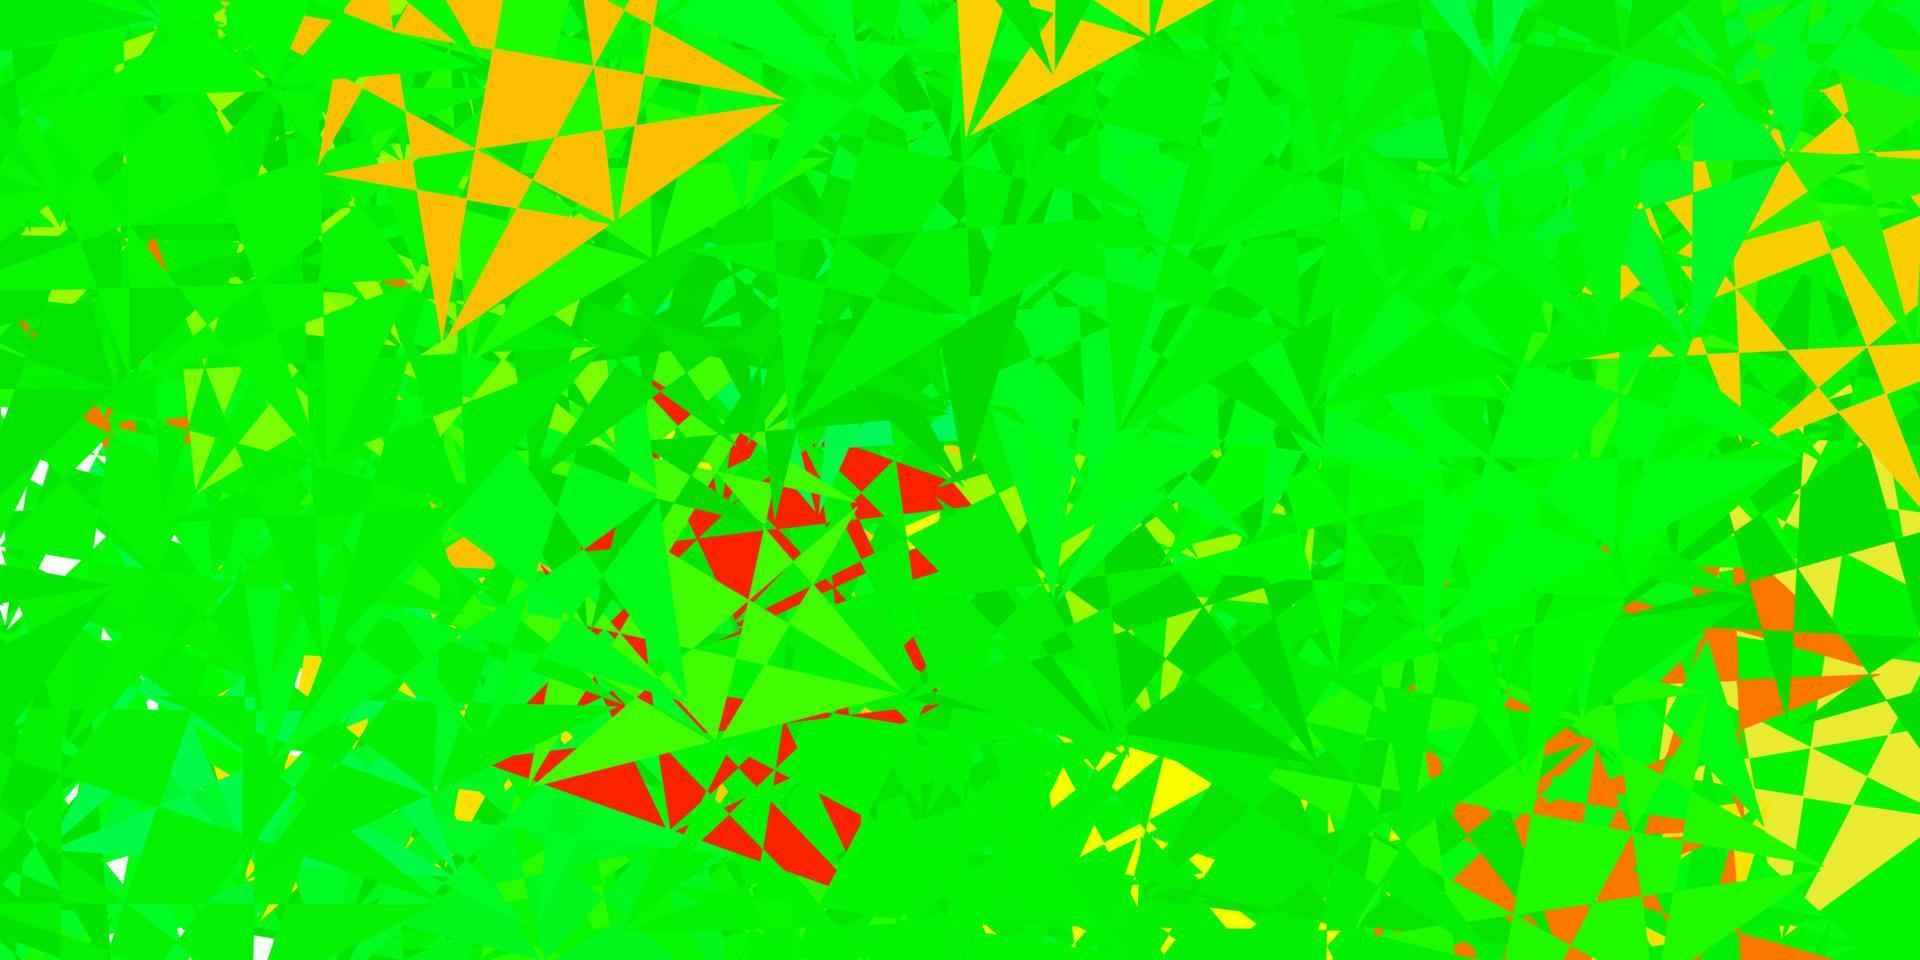 mörkgrön, röd vektormall med triangelformer. vektor